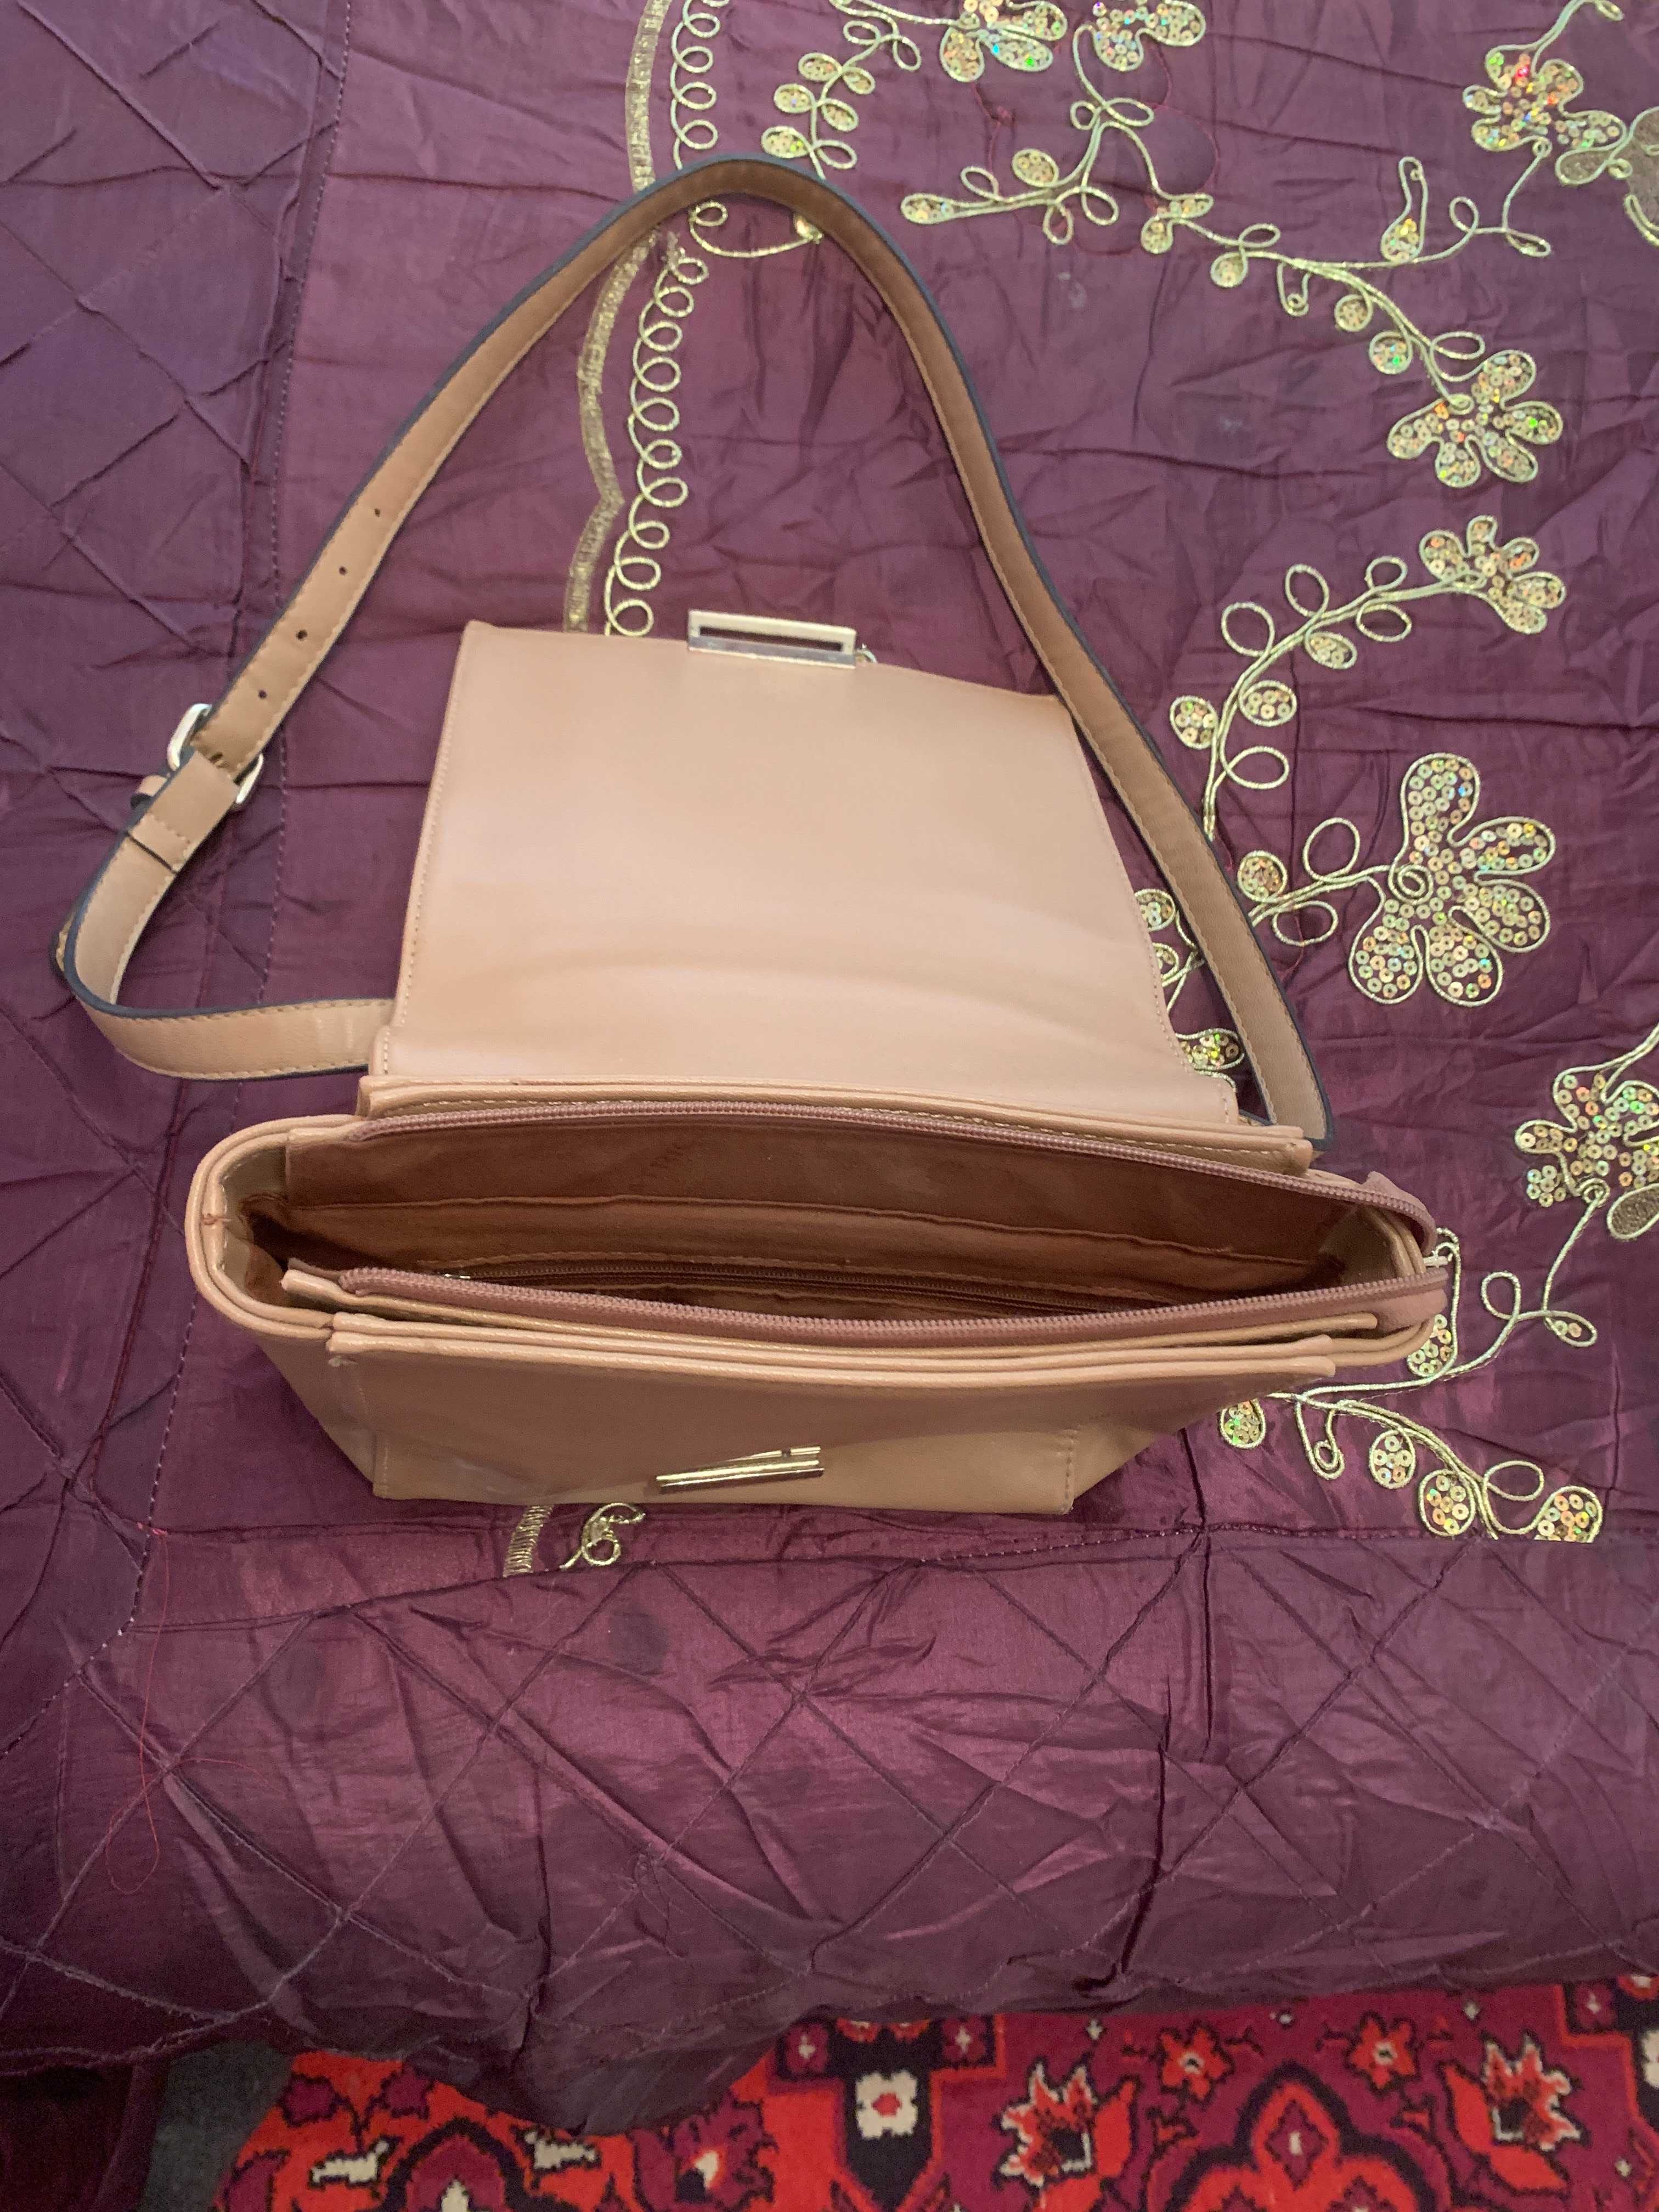 Продам сумочку дамскую из натур. кожи цвета кофе (сделано в Италии)